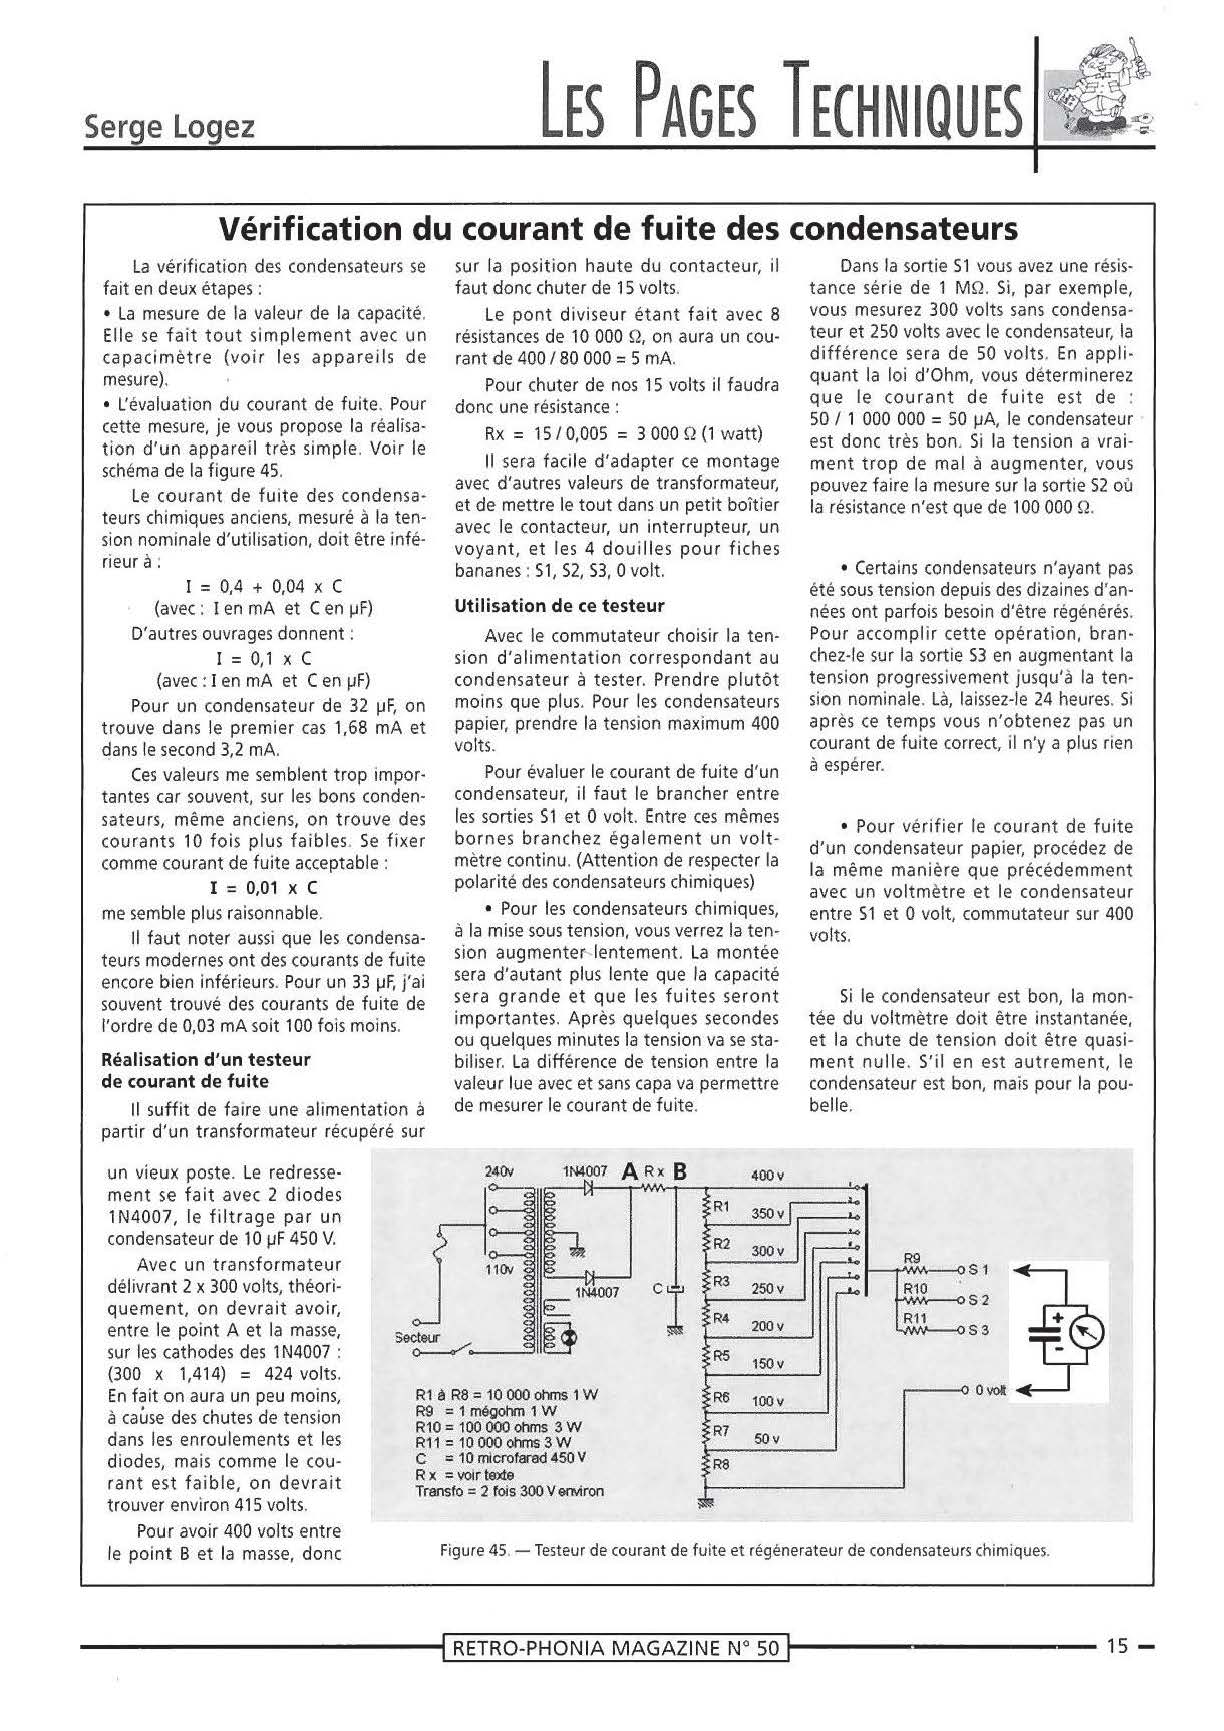 Rétro-Phonia n° 50 page 15.jpg